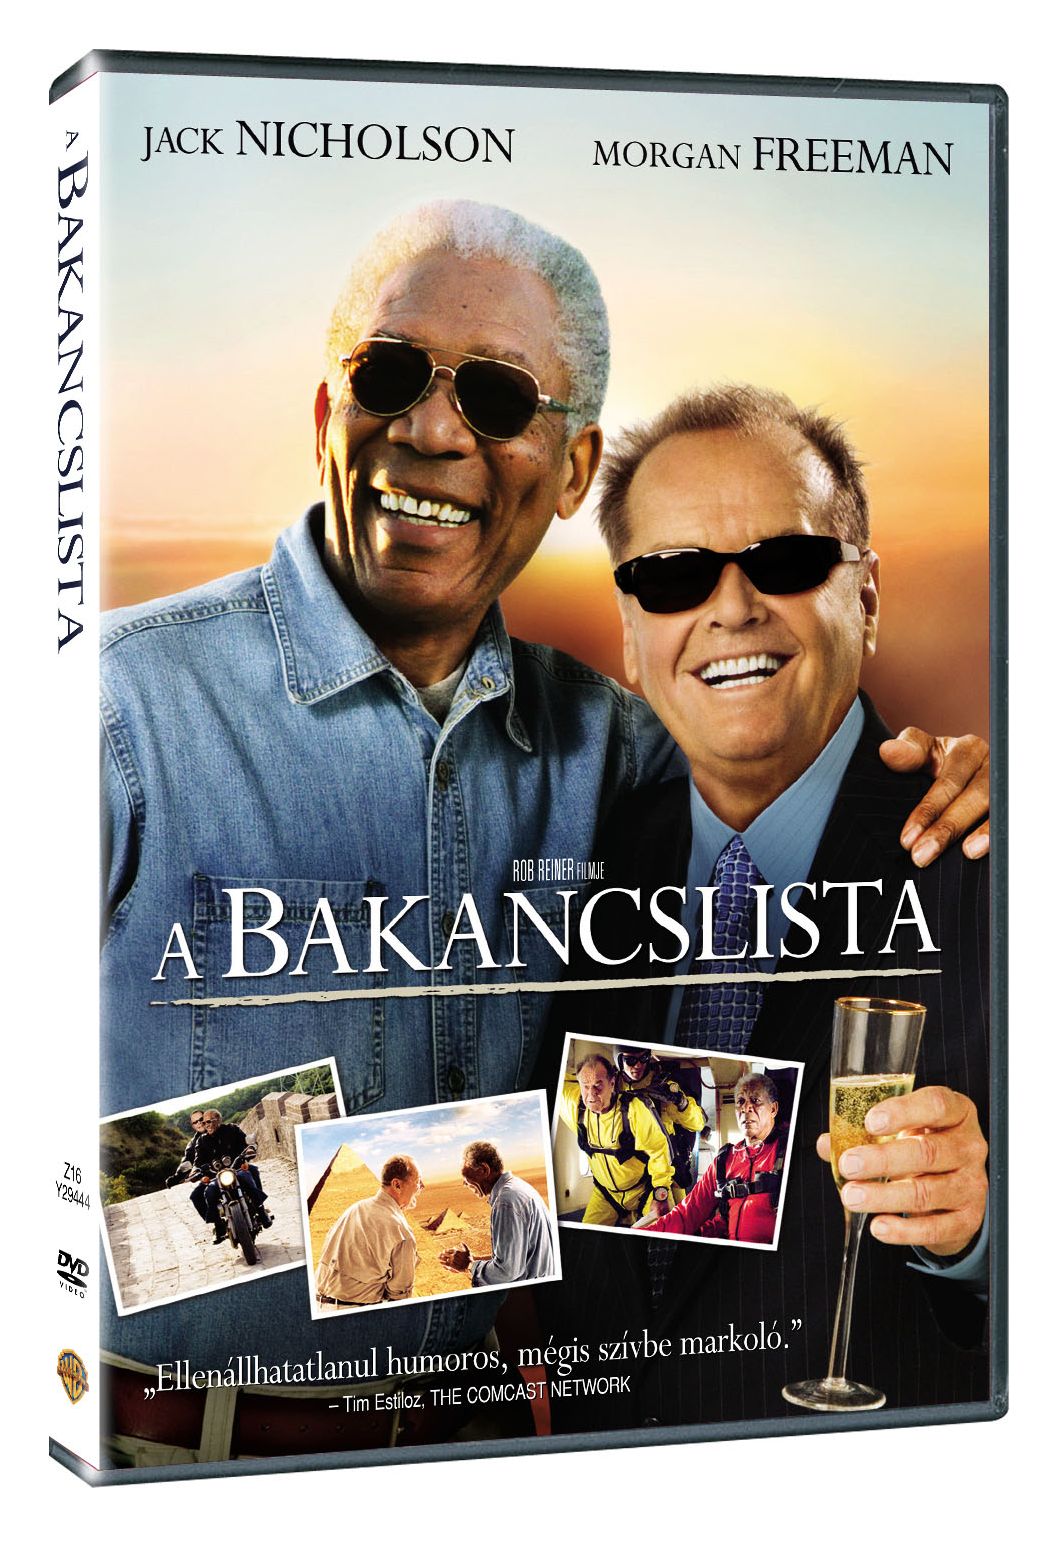 A bakancslista DVD